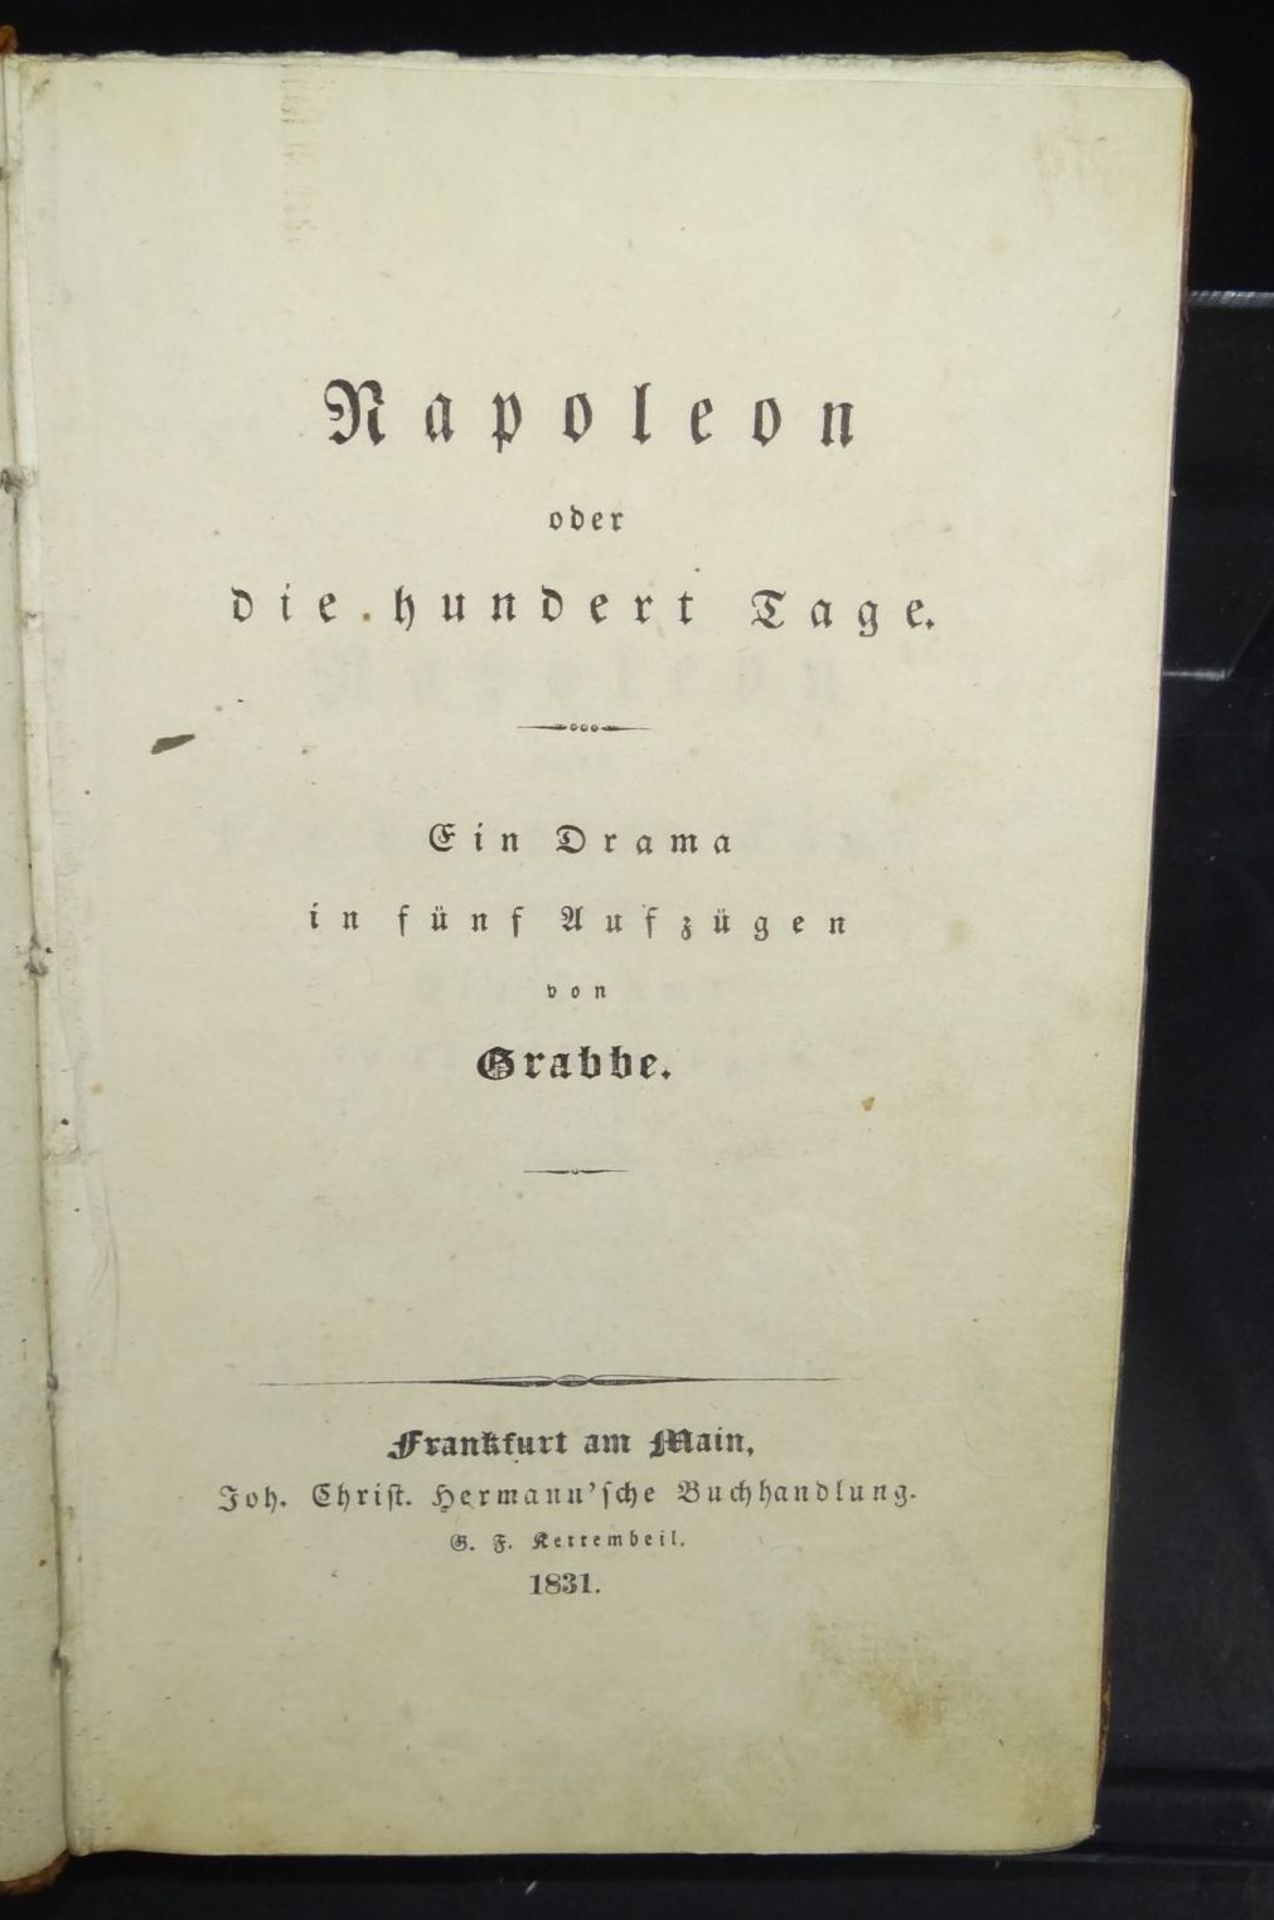 Grabbe "Napoleon oder die 100 Tage" Theaterstück, 1831, 322 S. Kl.-8°. Pbd. d. Zt. Erstausga- - - - Bild 2 aus 7